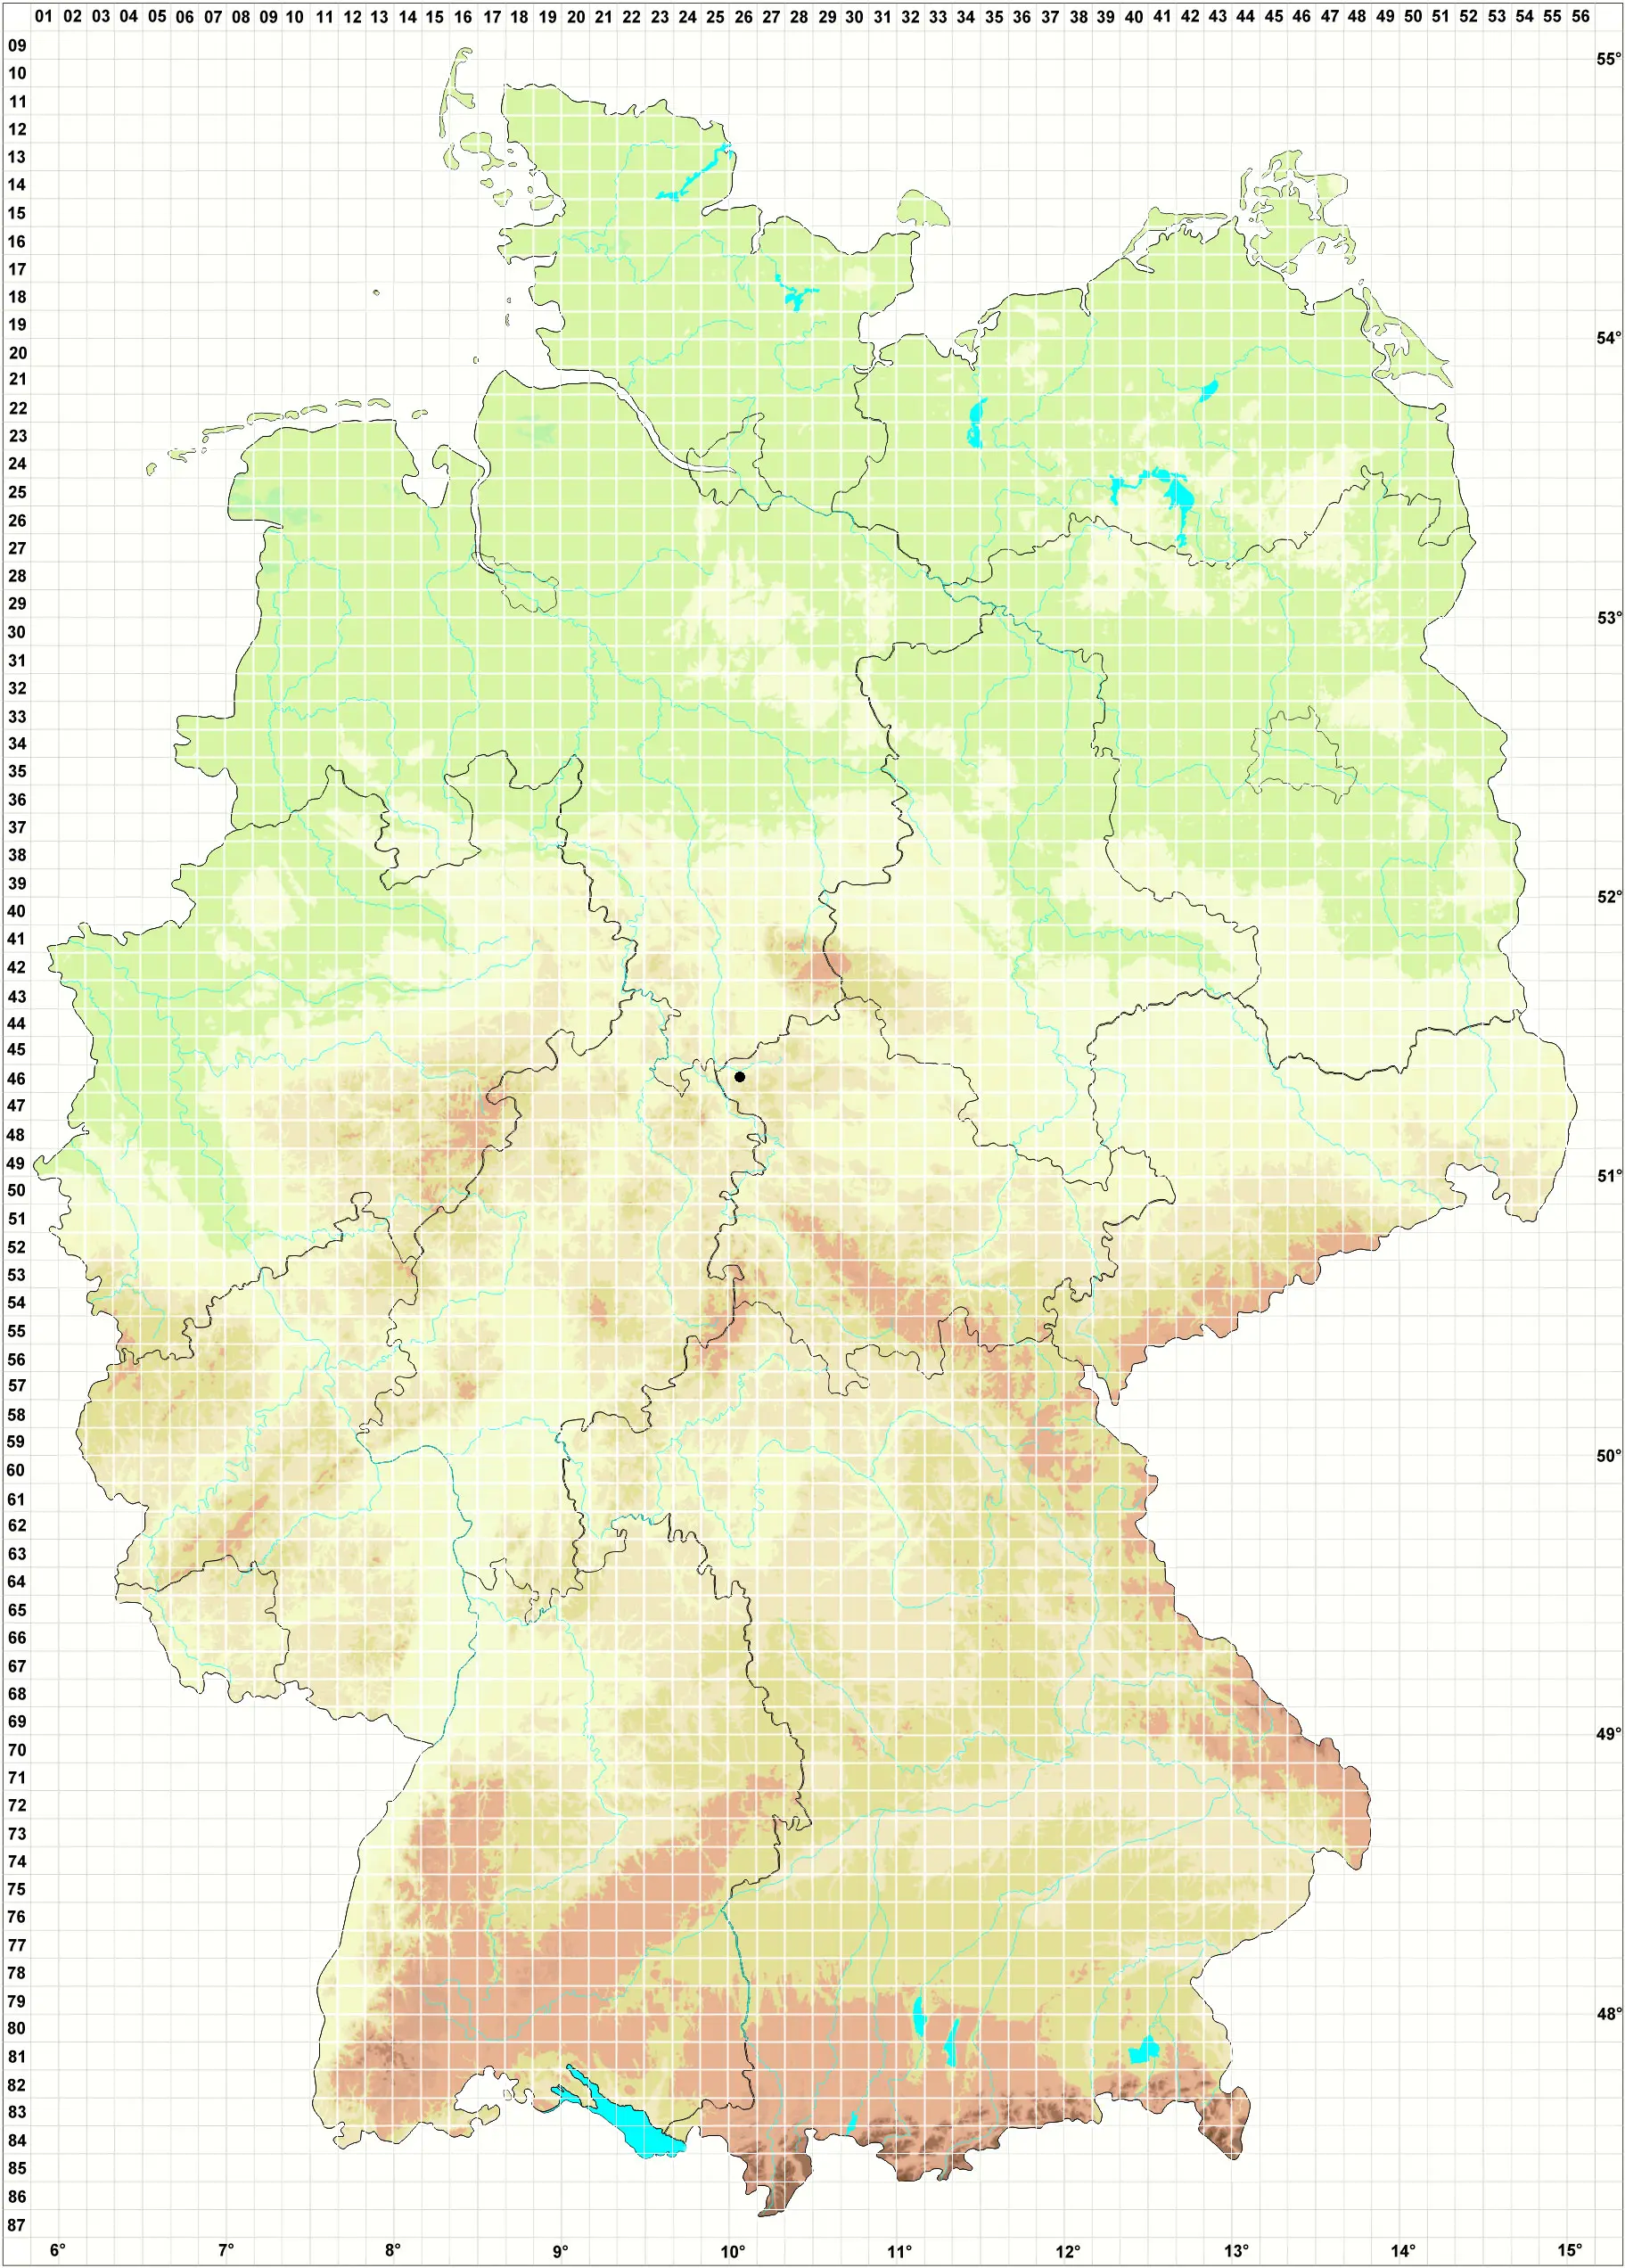 Karte M. Burghardt & J. Hentschel 07.05.2006